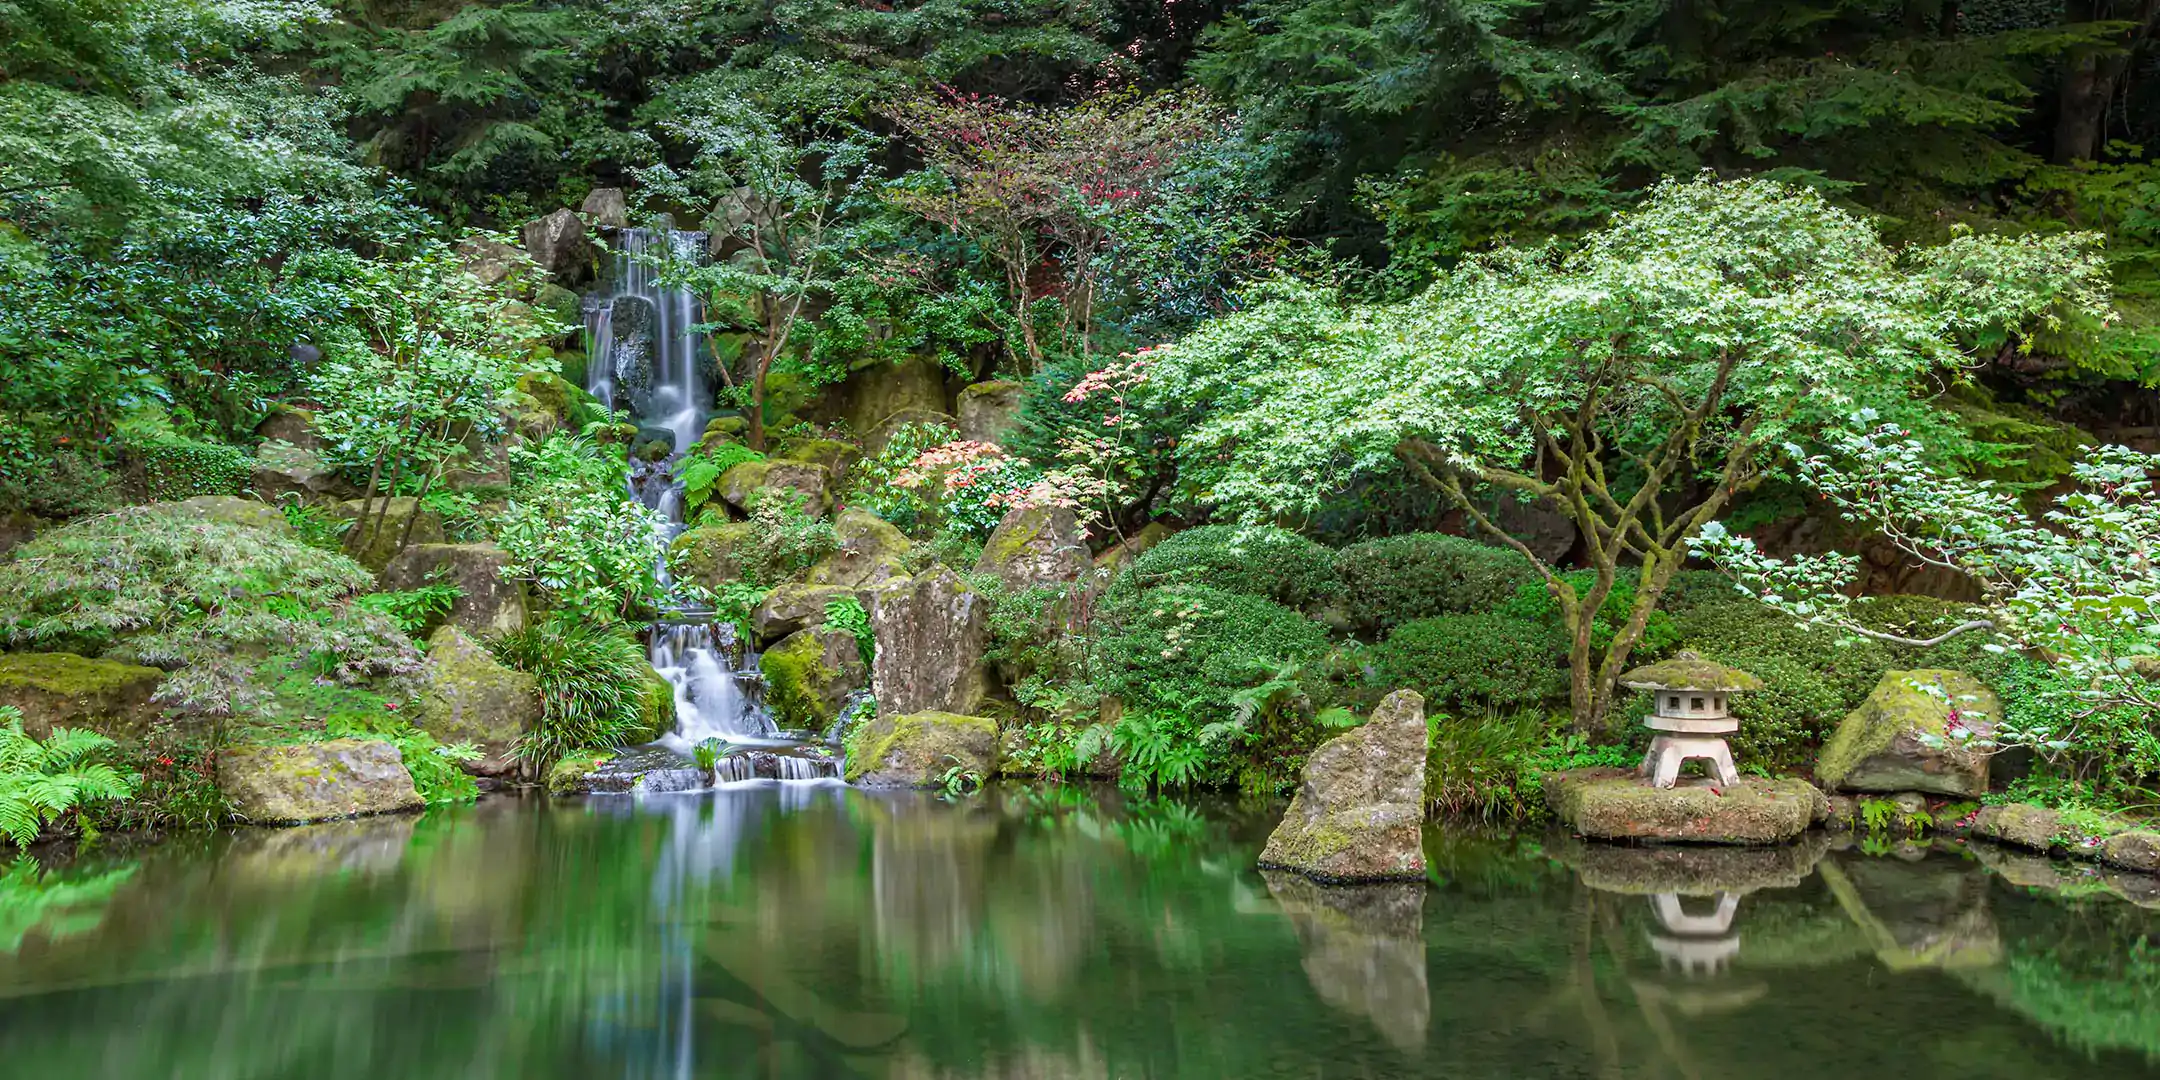 Serene pond sorrounded by lush green vegetation